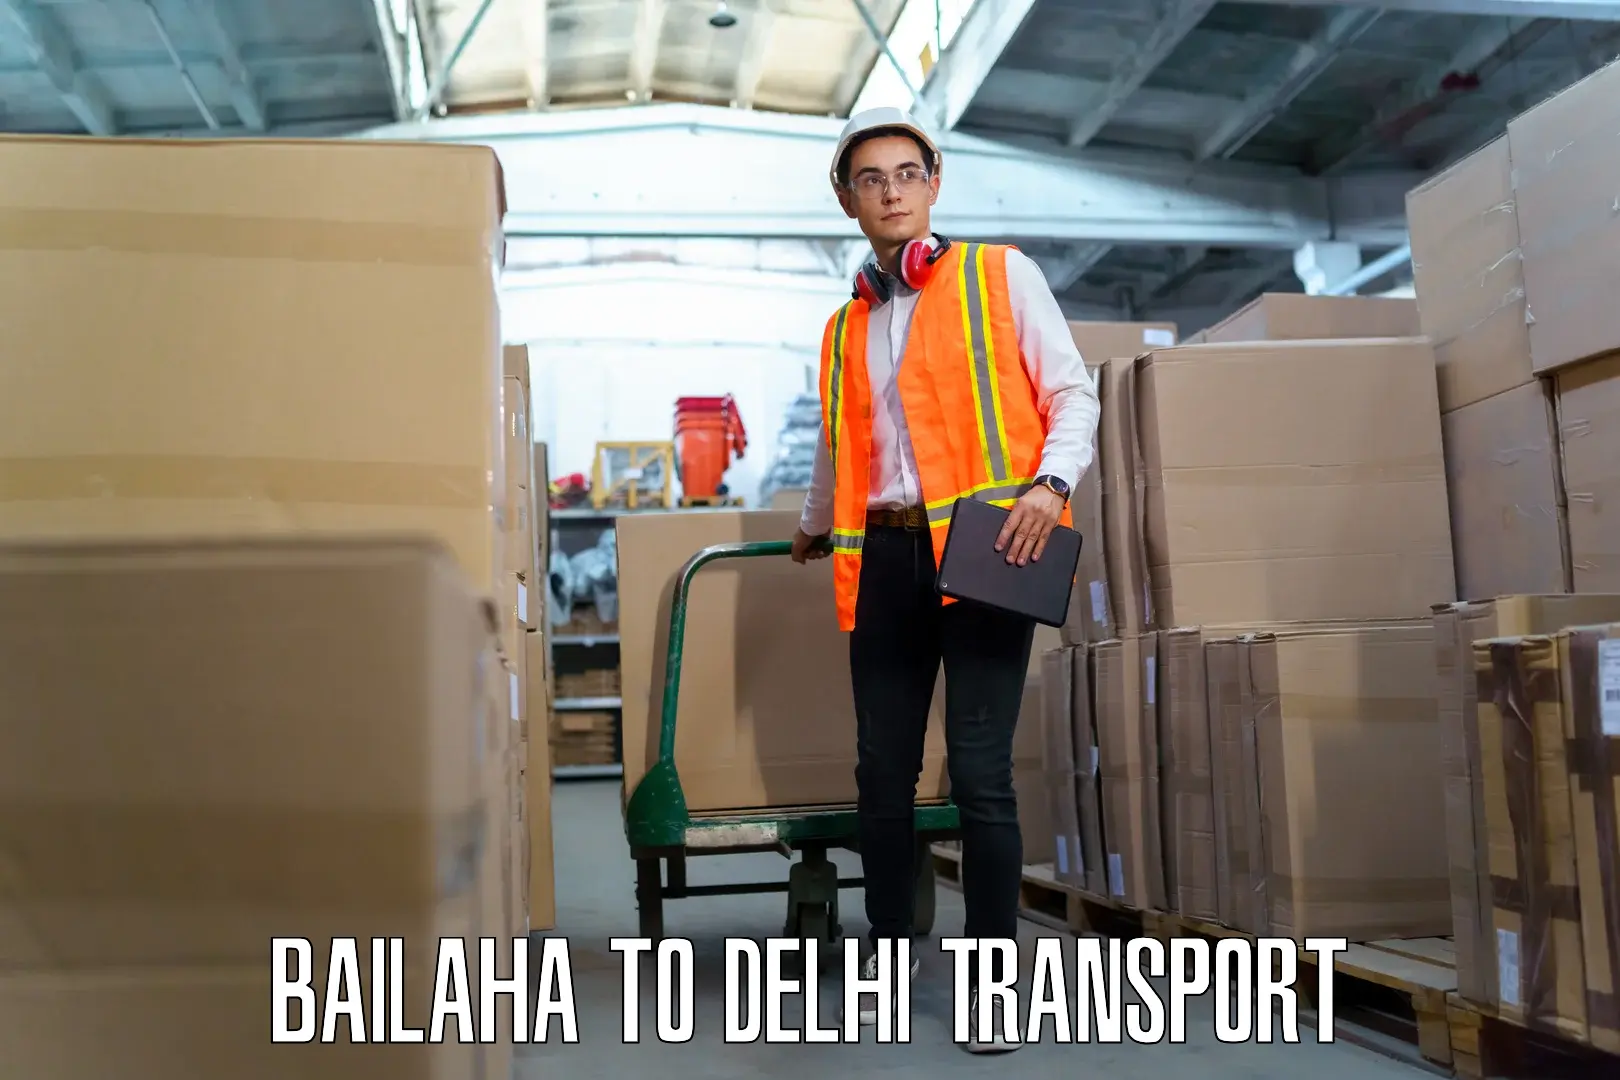 Cargo train transport services Bailaha to Jamia Hamdard New Delhi